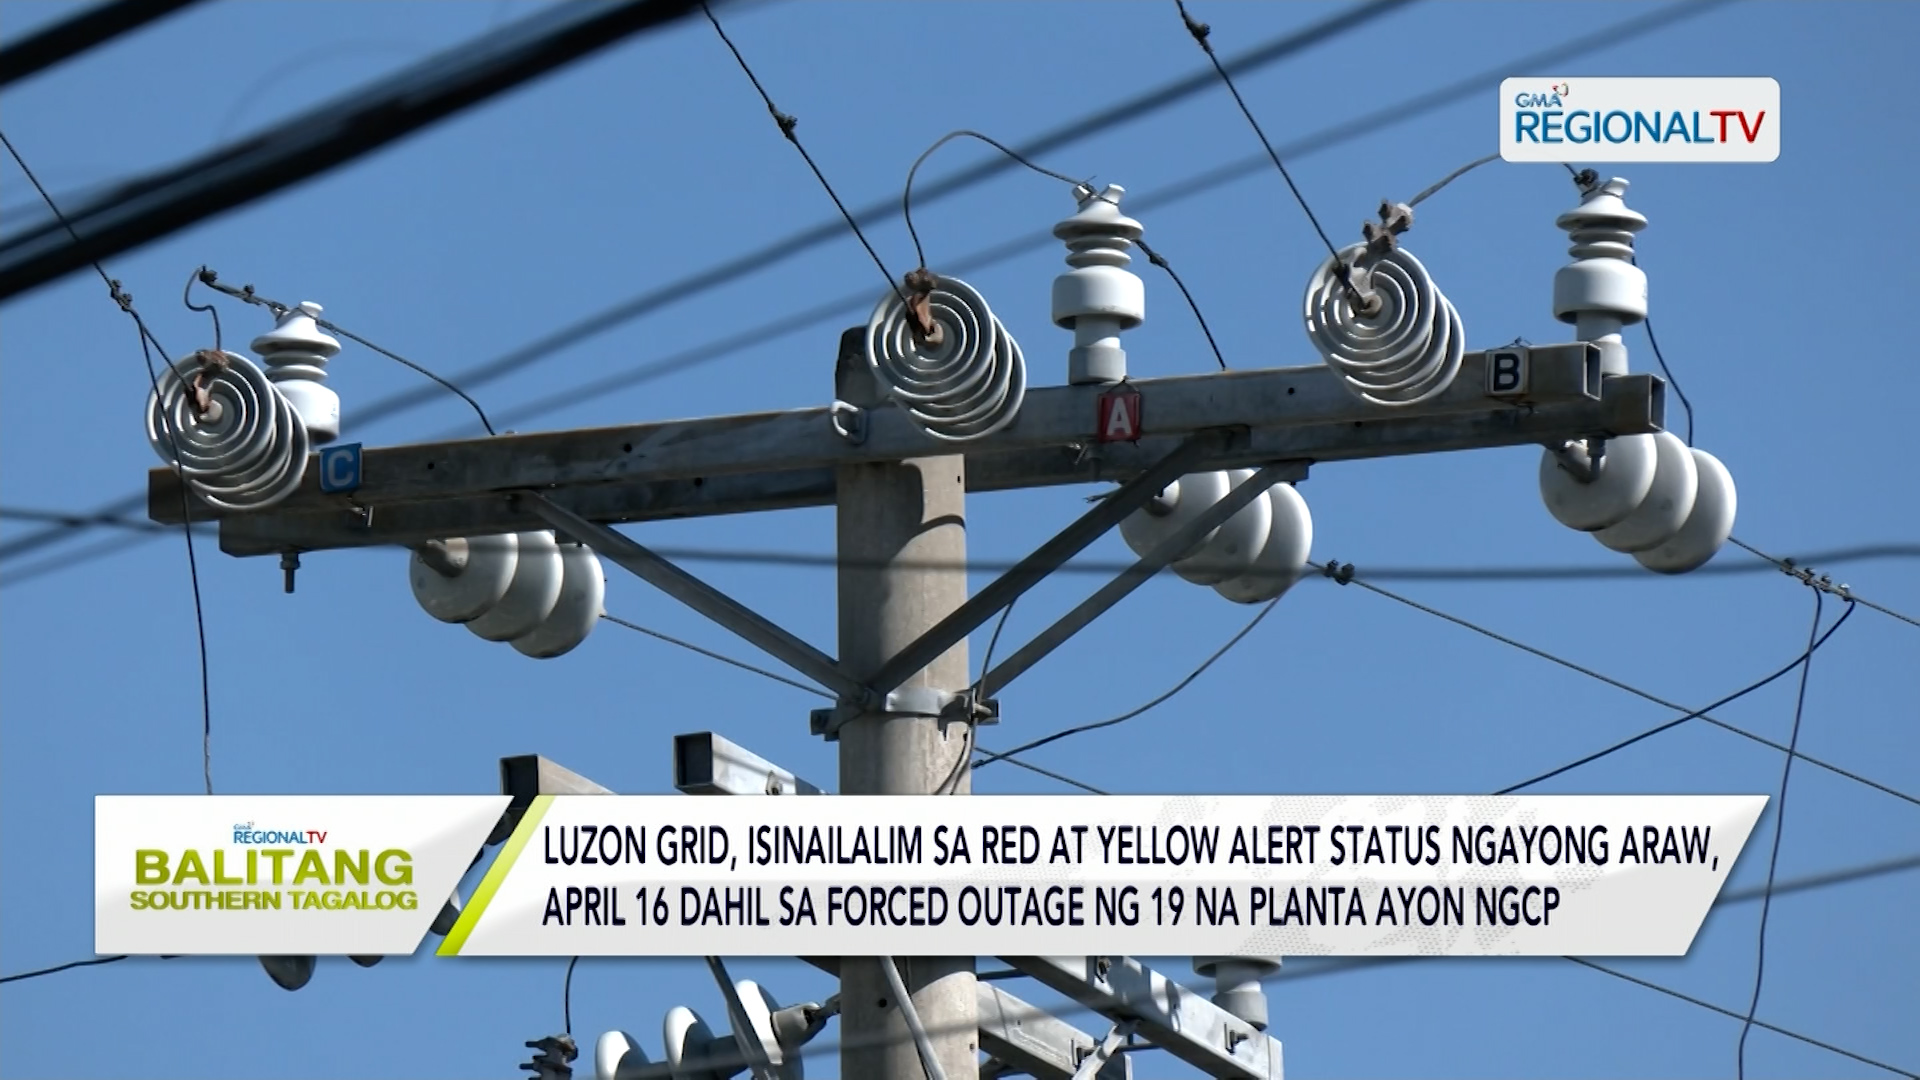 Luzon grid, isinilalim sa red at yellow alert status ngayong April 16